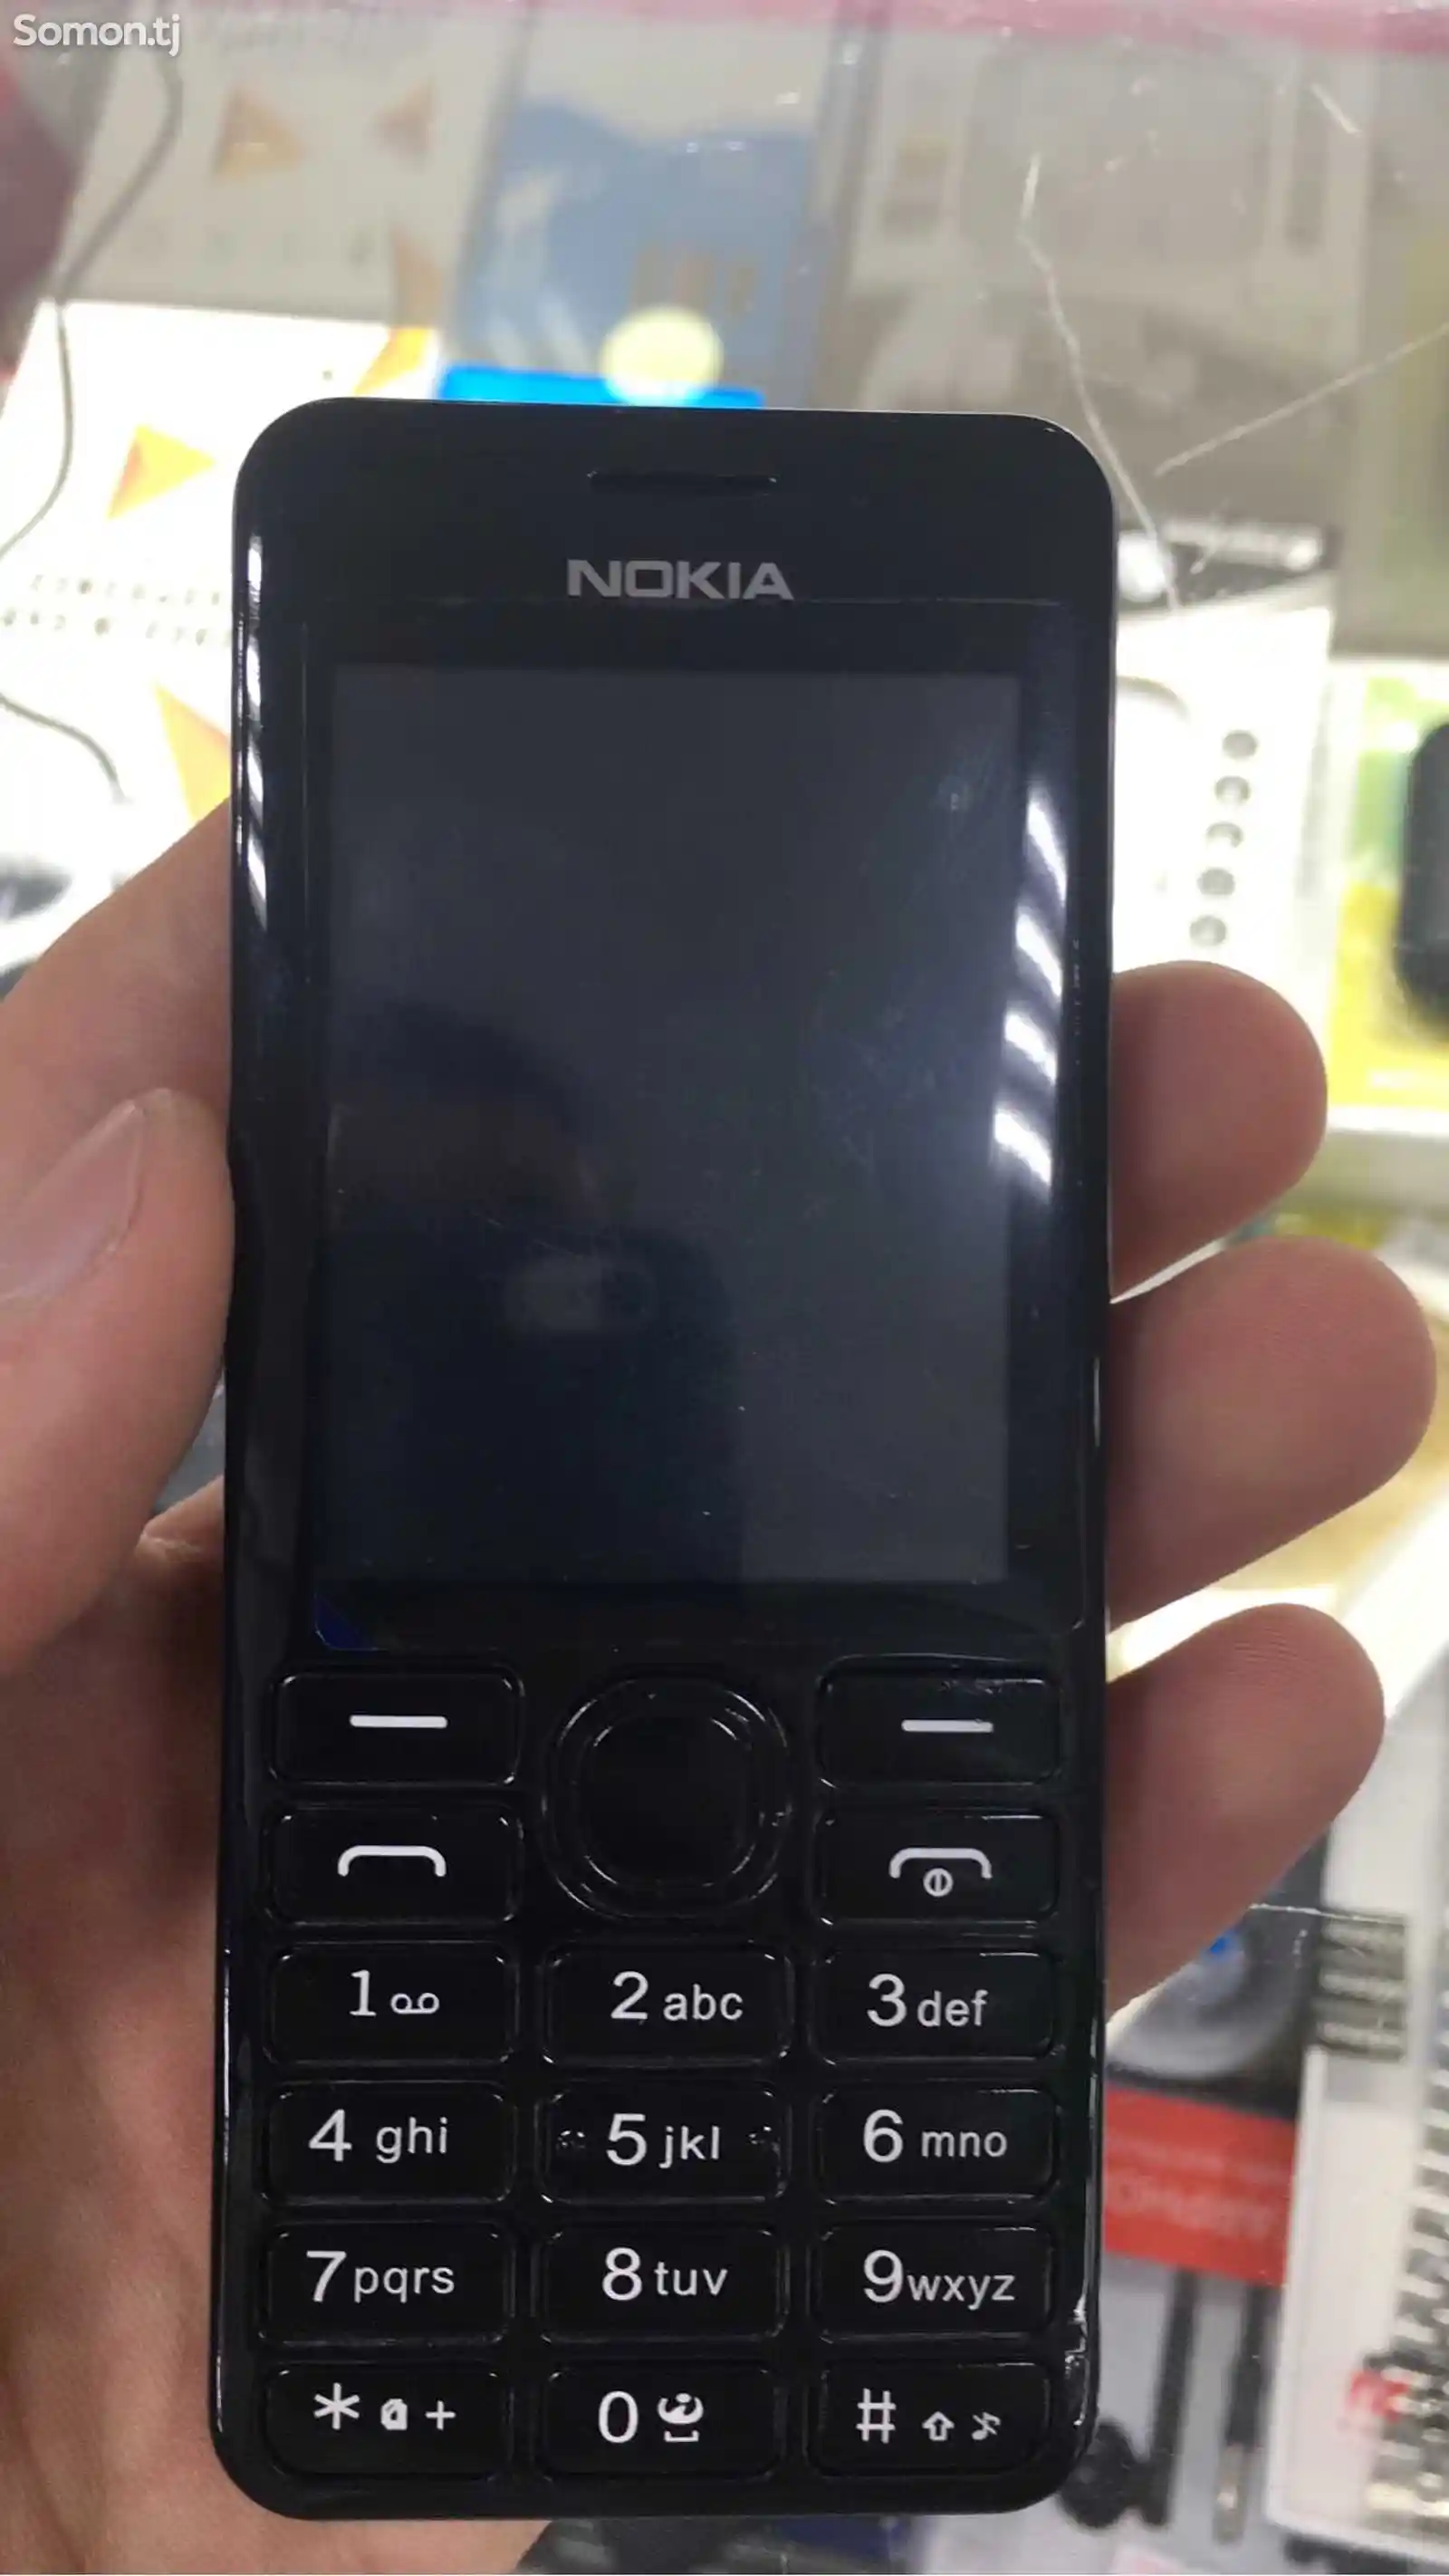 Nokia 206-1